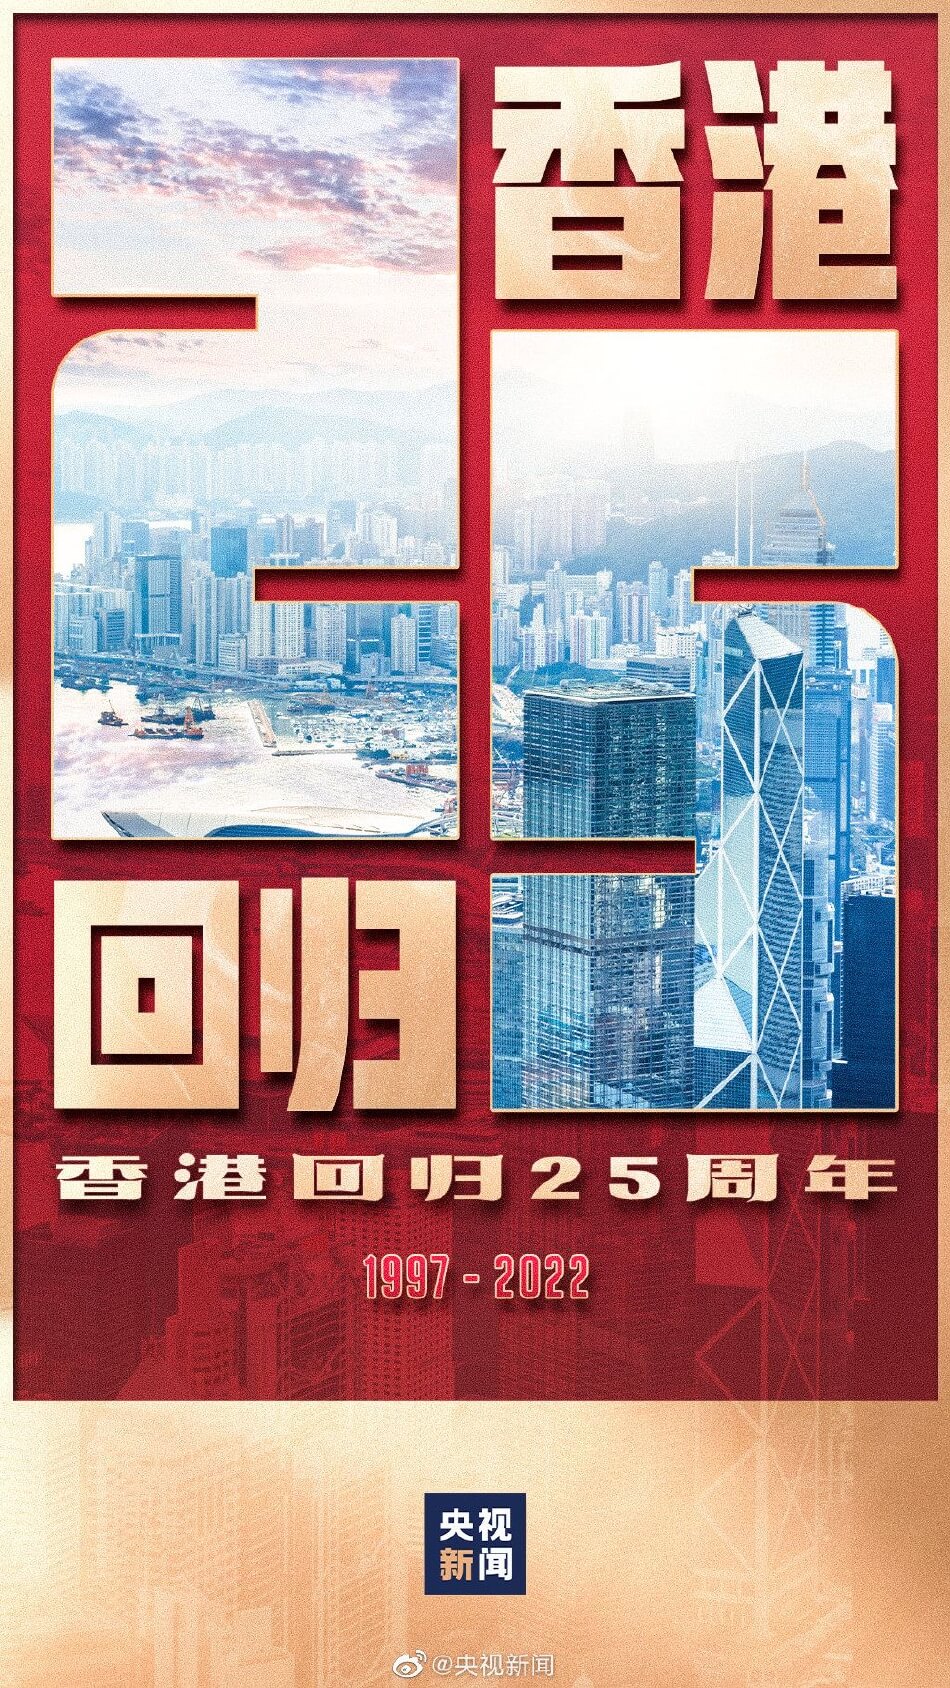 香港回归祖国25周年 迪丽热巴肖战蔡徐坤等众星发文庆祝